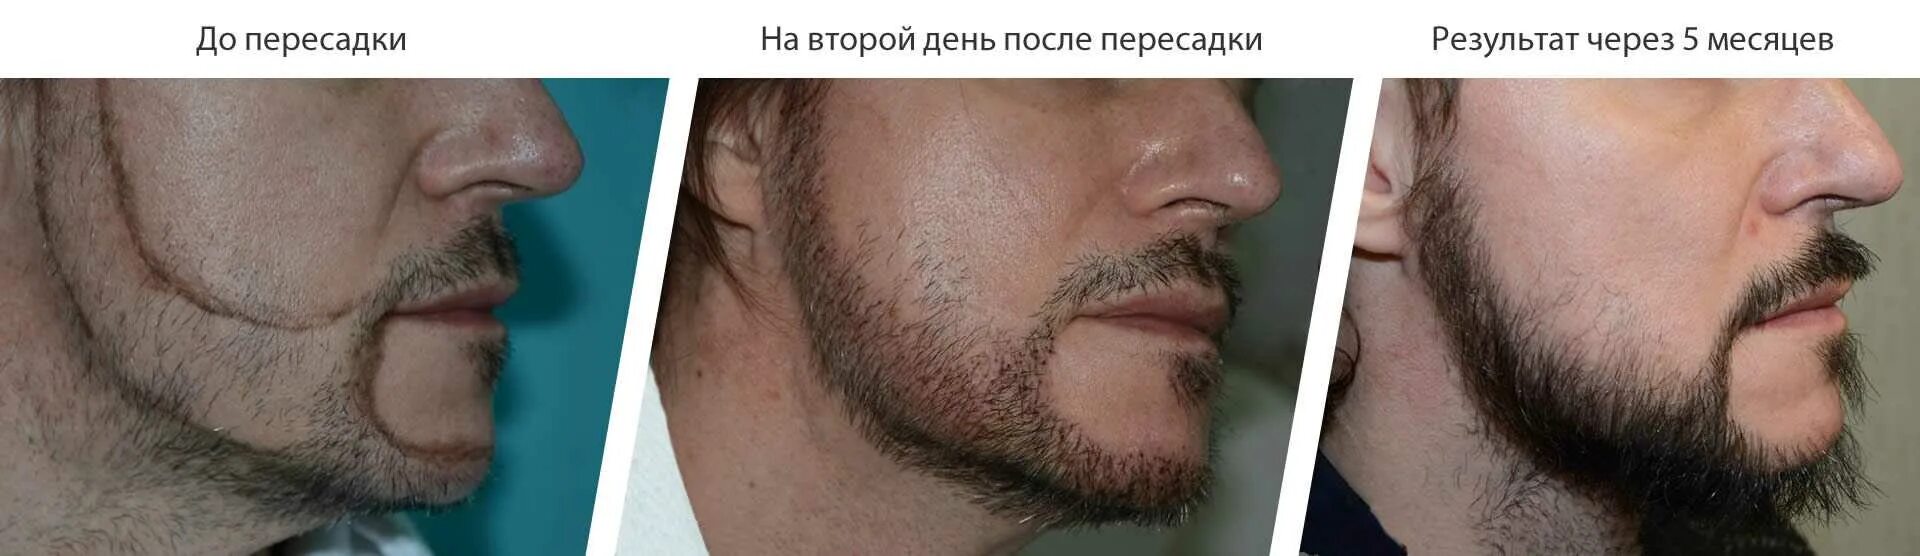 Рост волос на лице у мужчин. Пересадка бороды до и после. Трансплантация волос на бороду. Трансплантация бороды до после. Пересадка волос на бороду до и после.